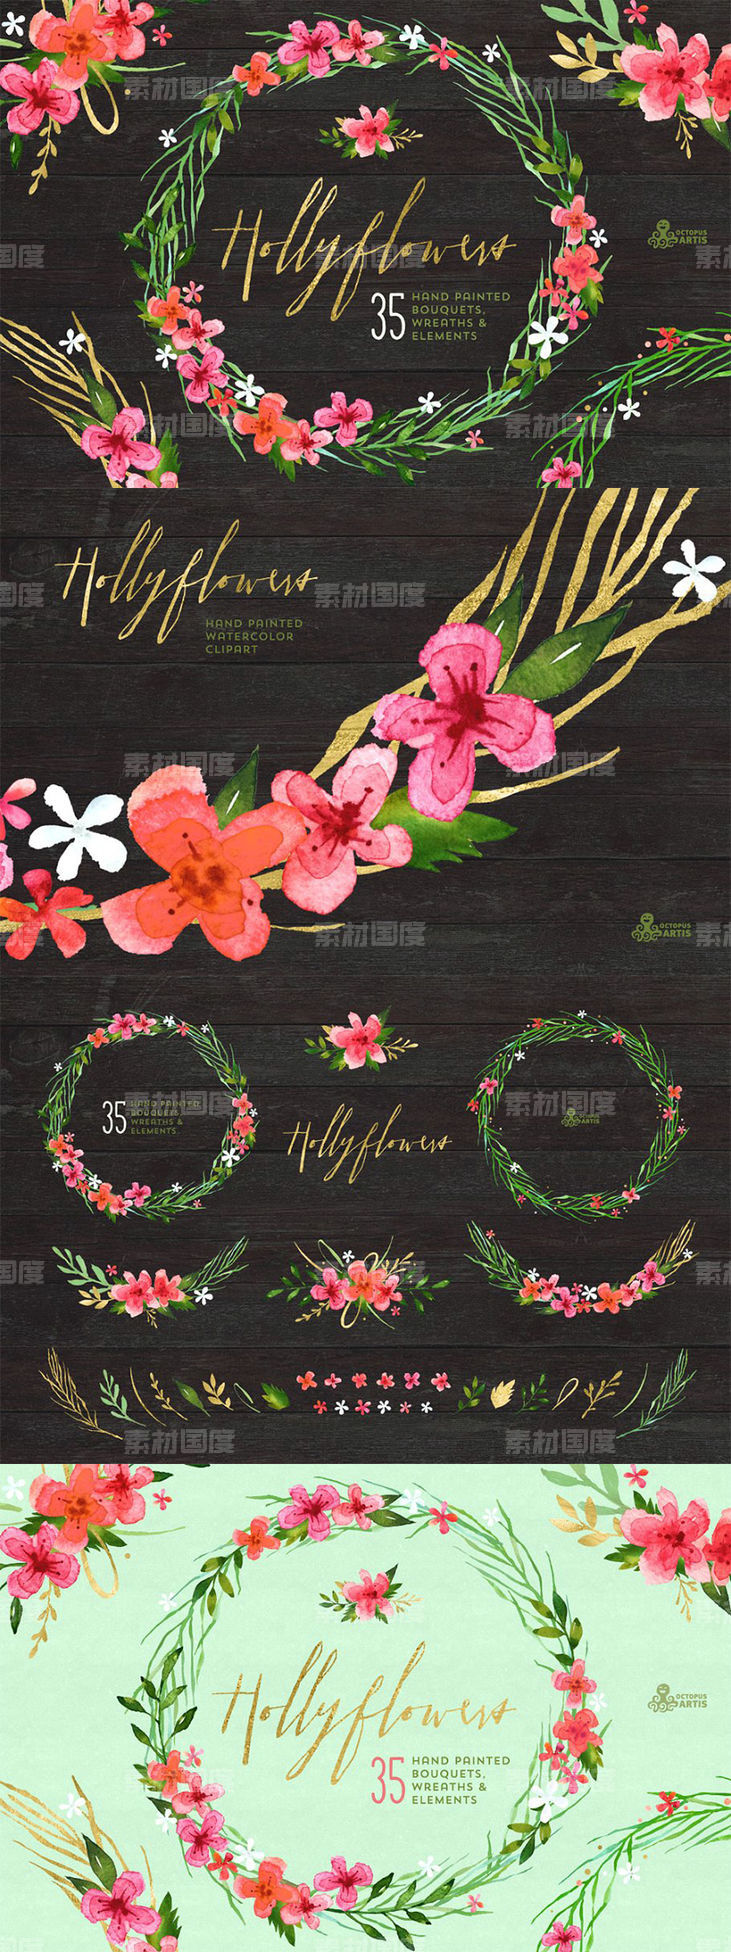 高质量手绘水彩花束剪贴画 Hollyflowers Holiday floral set